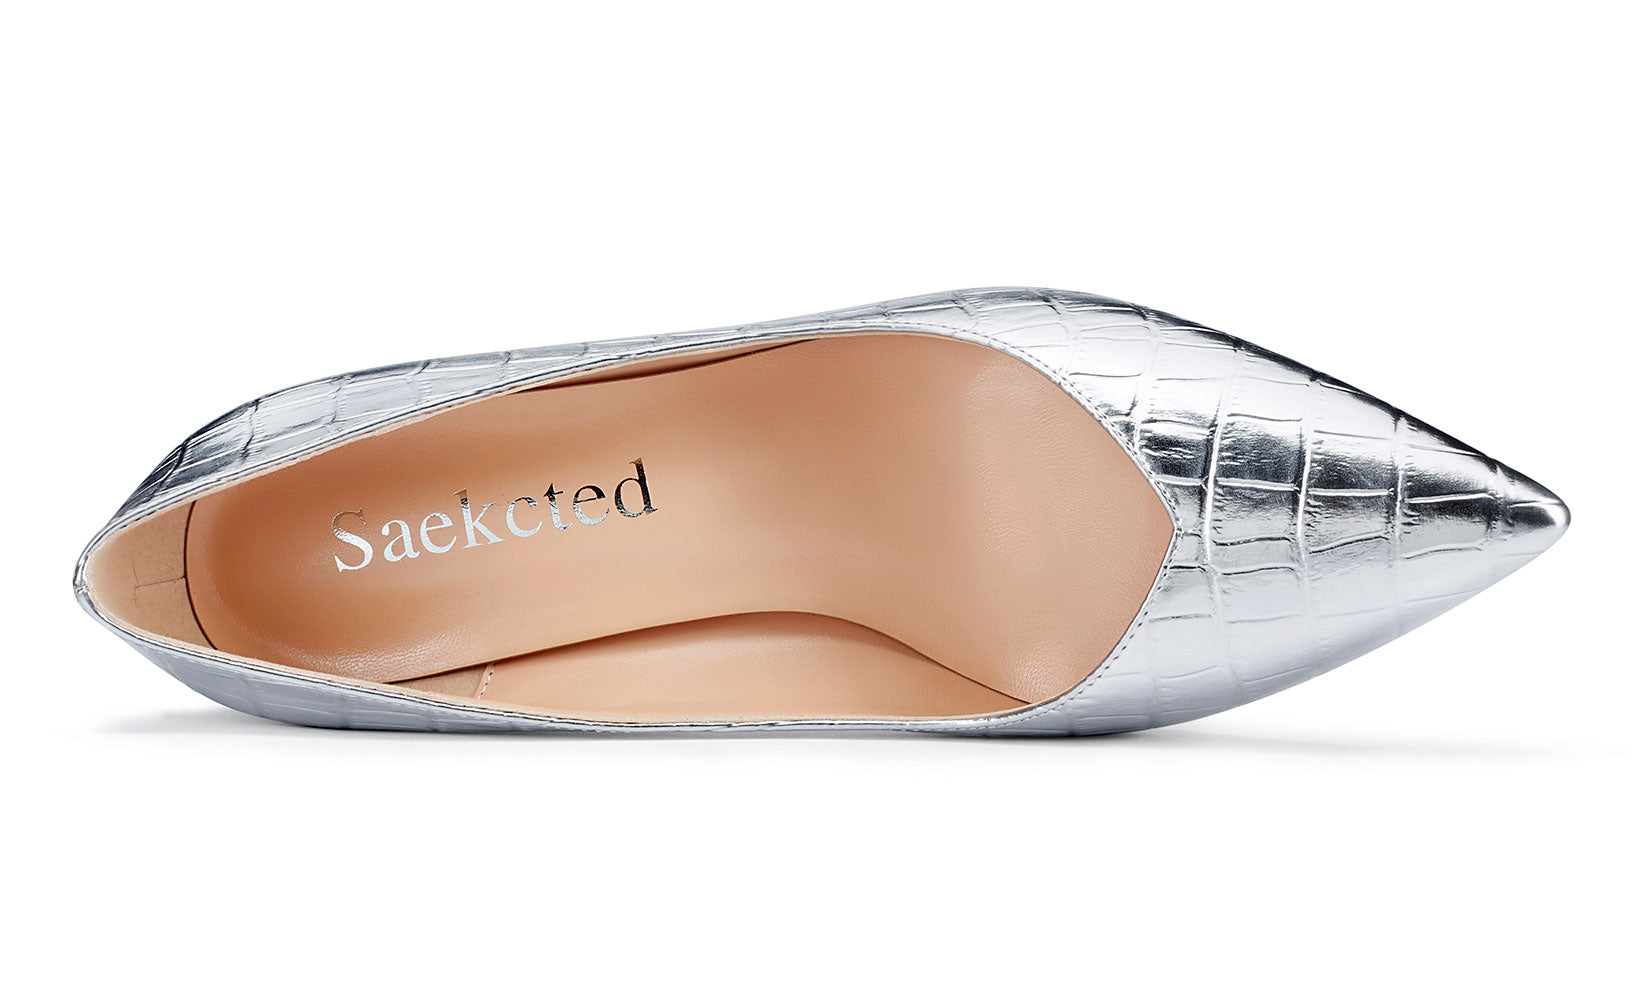 Women's Shoes Heels 3 Inch Silver Sateen Glitter Peep Toe 9 & CO Size 9 1/2  | eBay